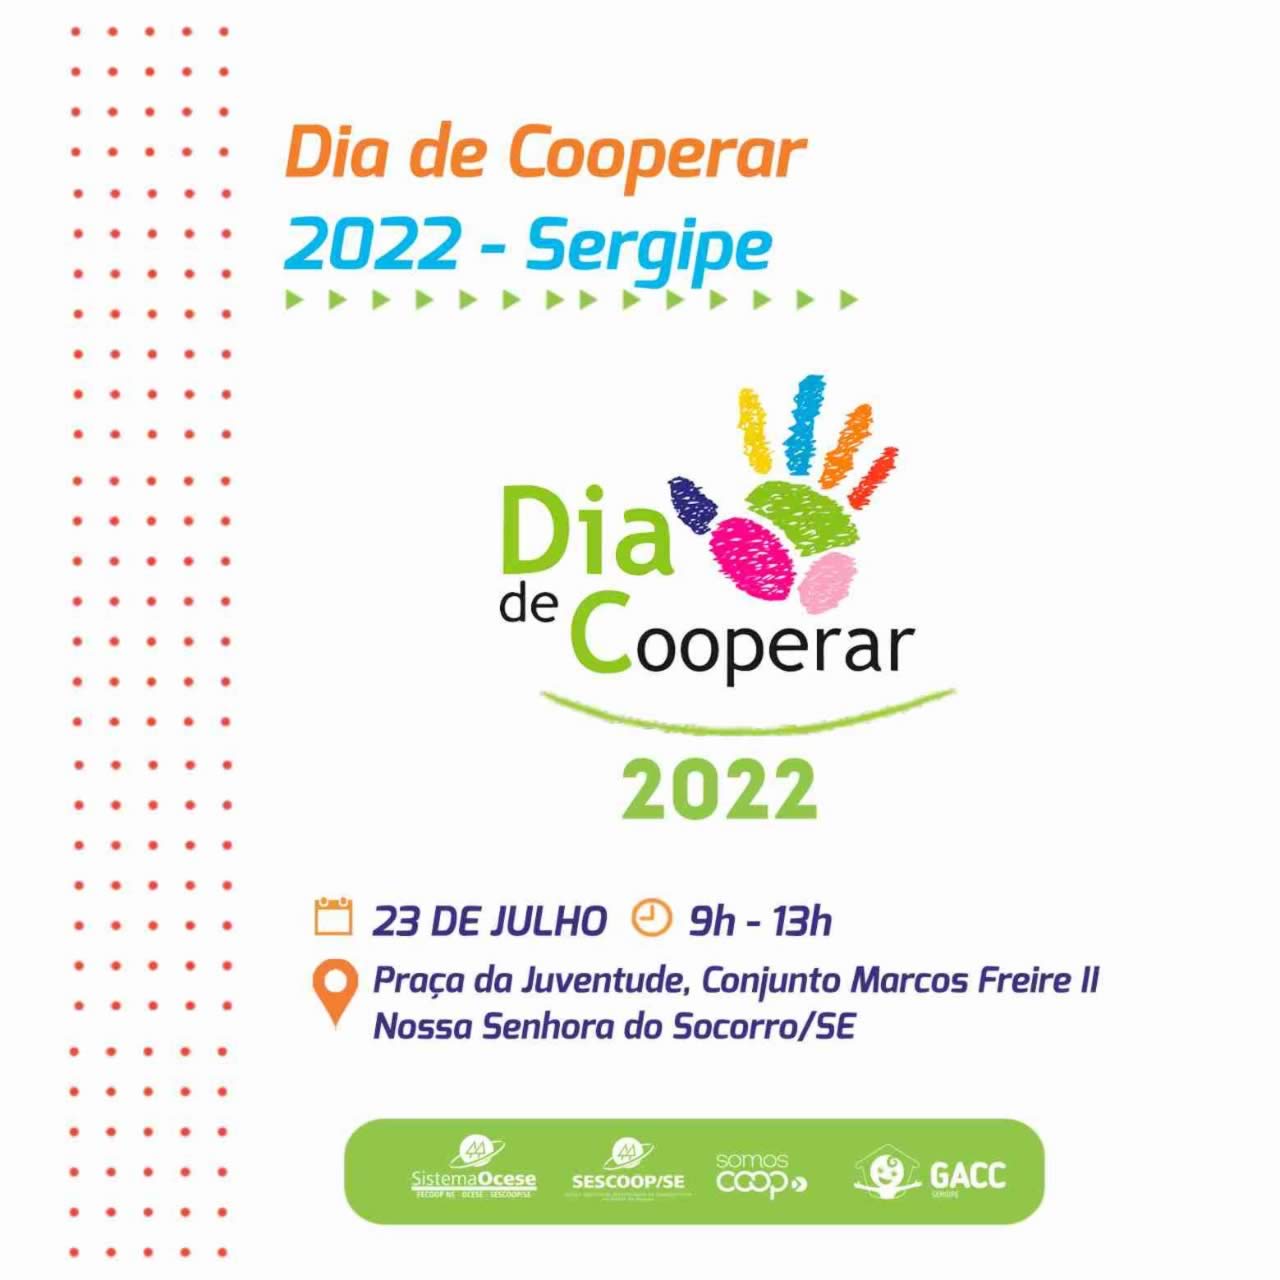 GACC/SE participa do Dia do Cooperar em Sergipe